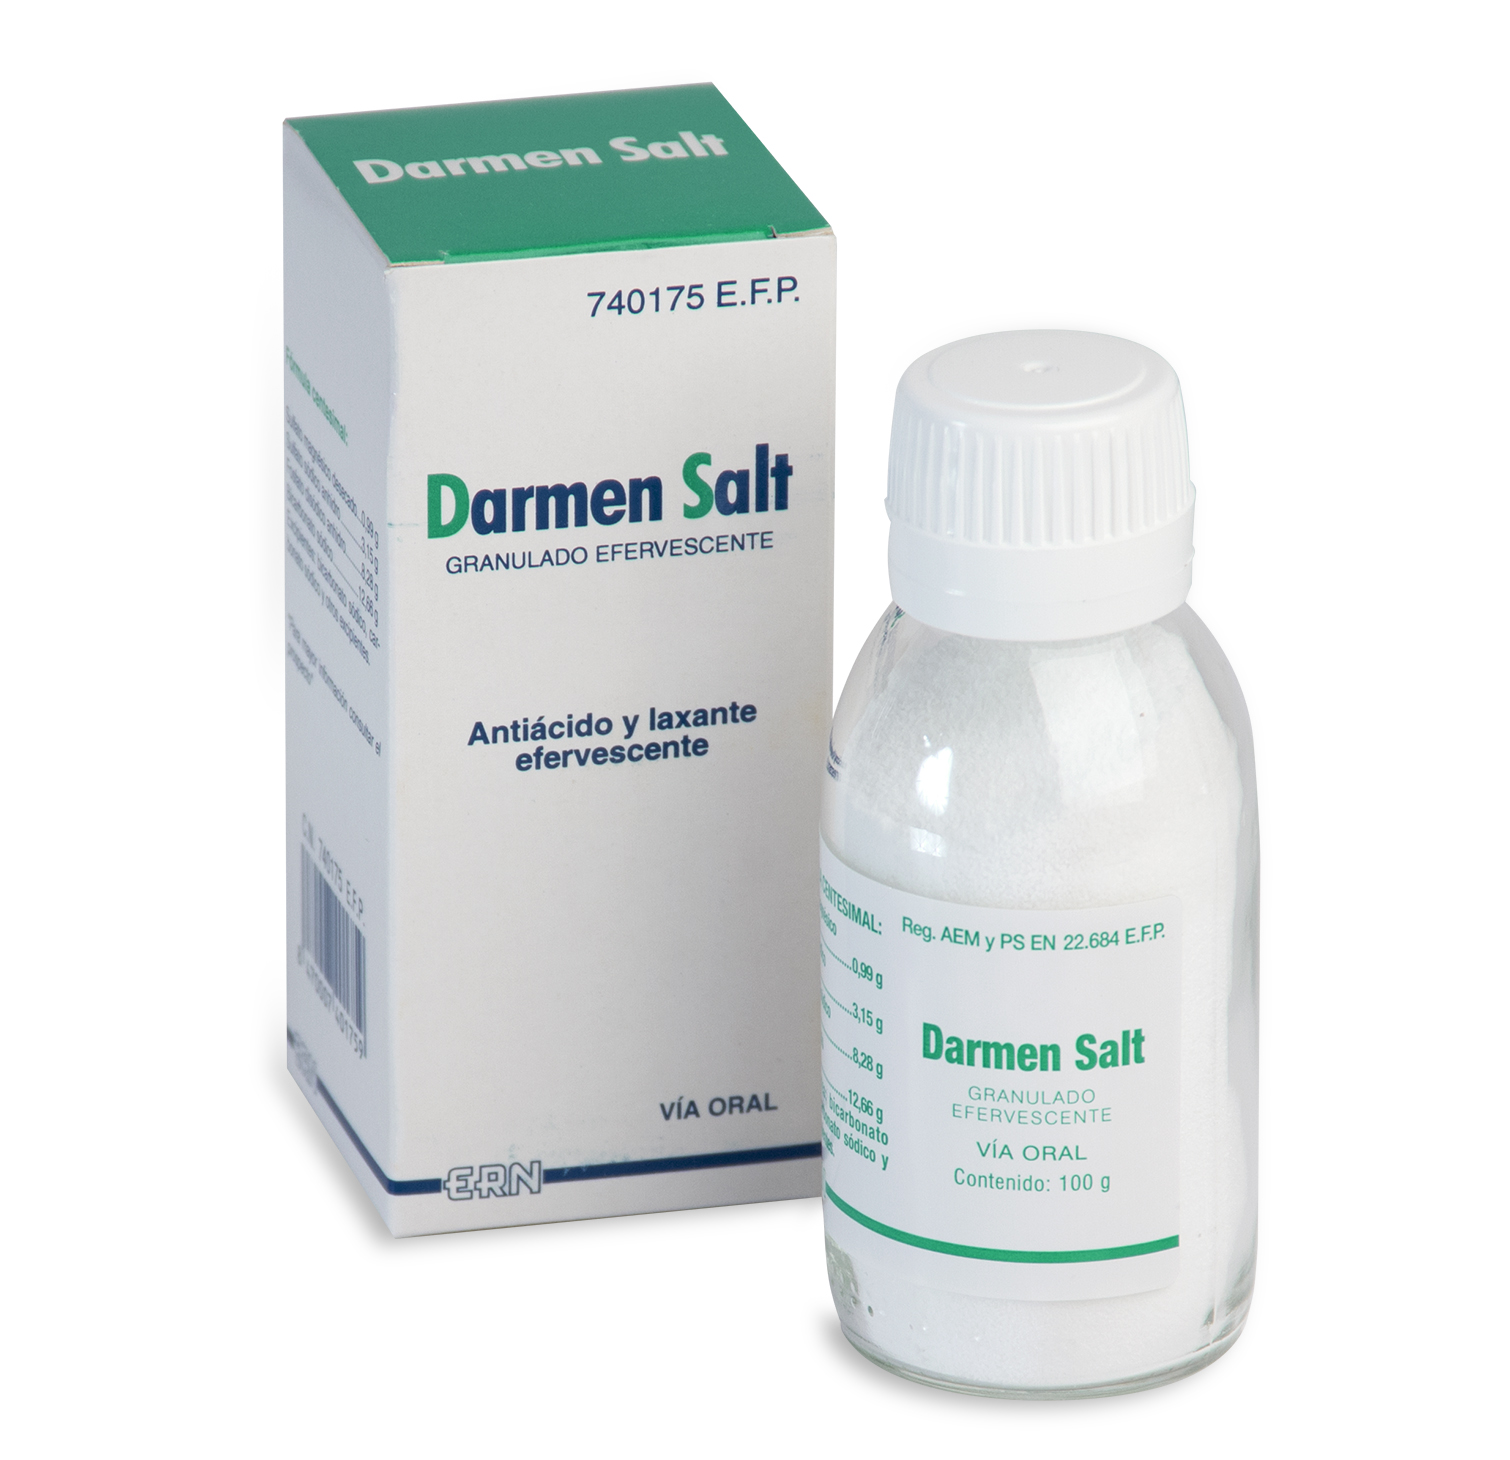 DARMEN SALT GRANULADO EFERVESCENTE, 1 frasco de 100 g